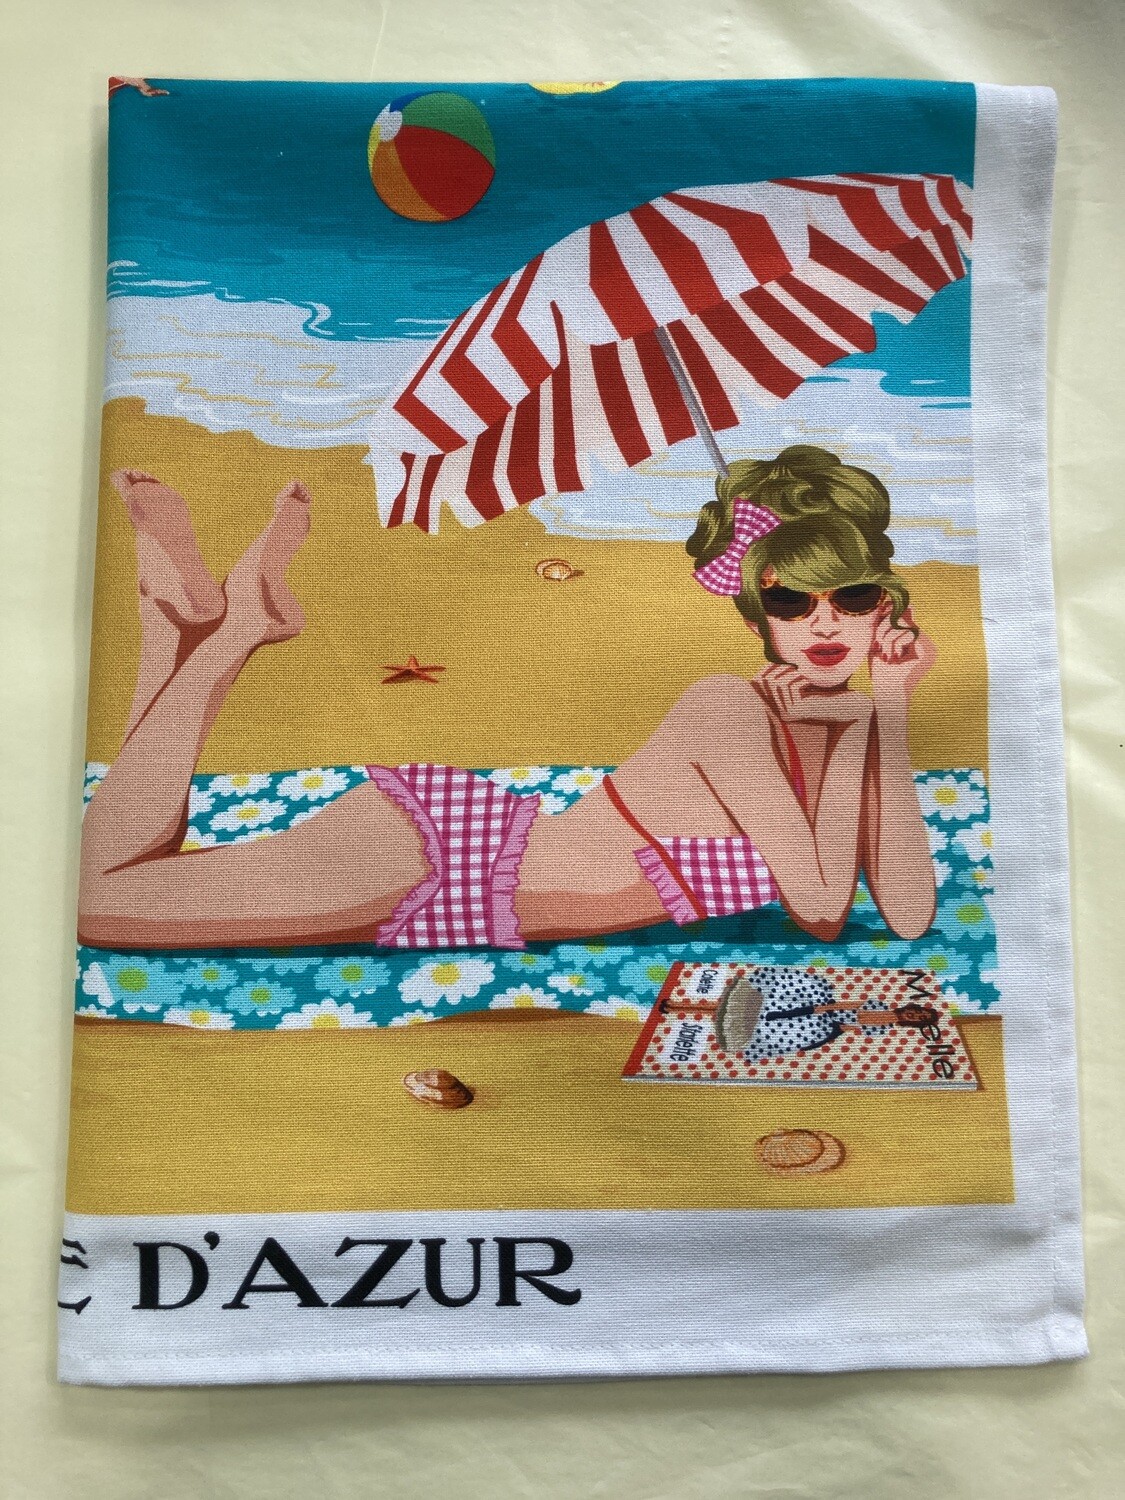 LE PANIER - Cote d’ Azur Tea Towel